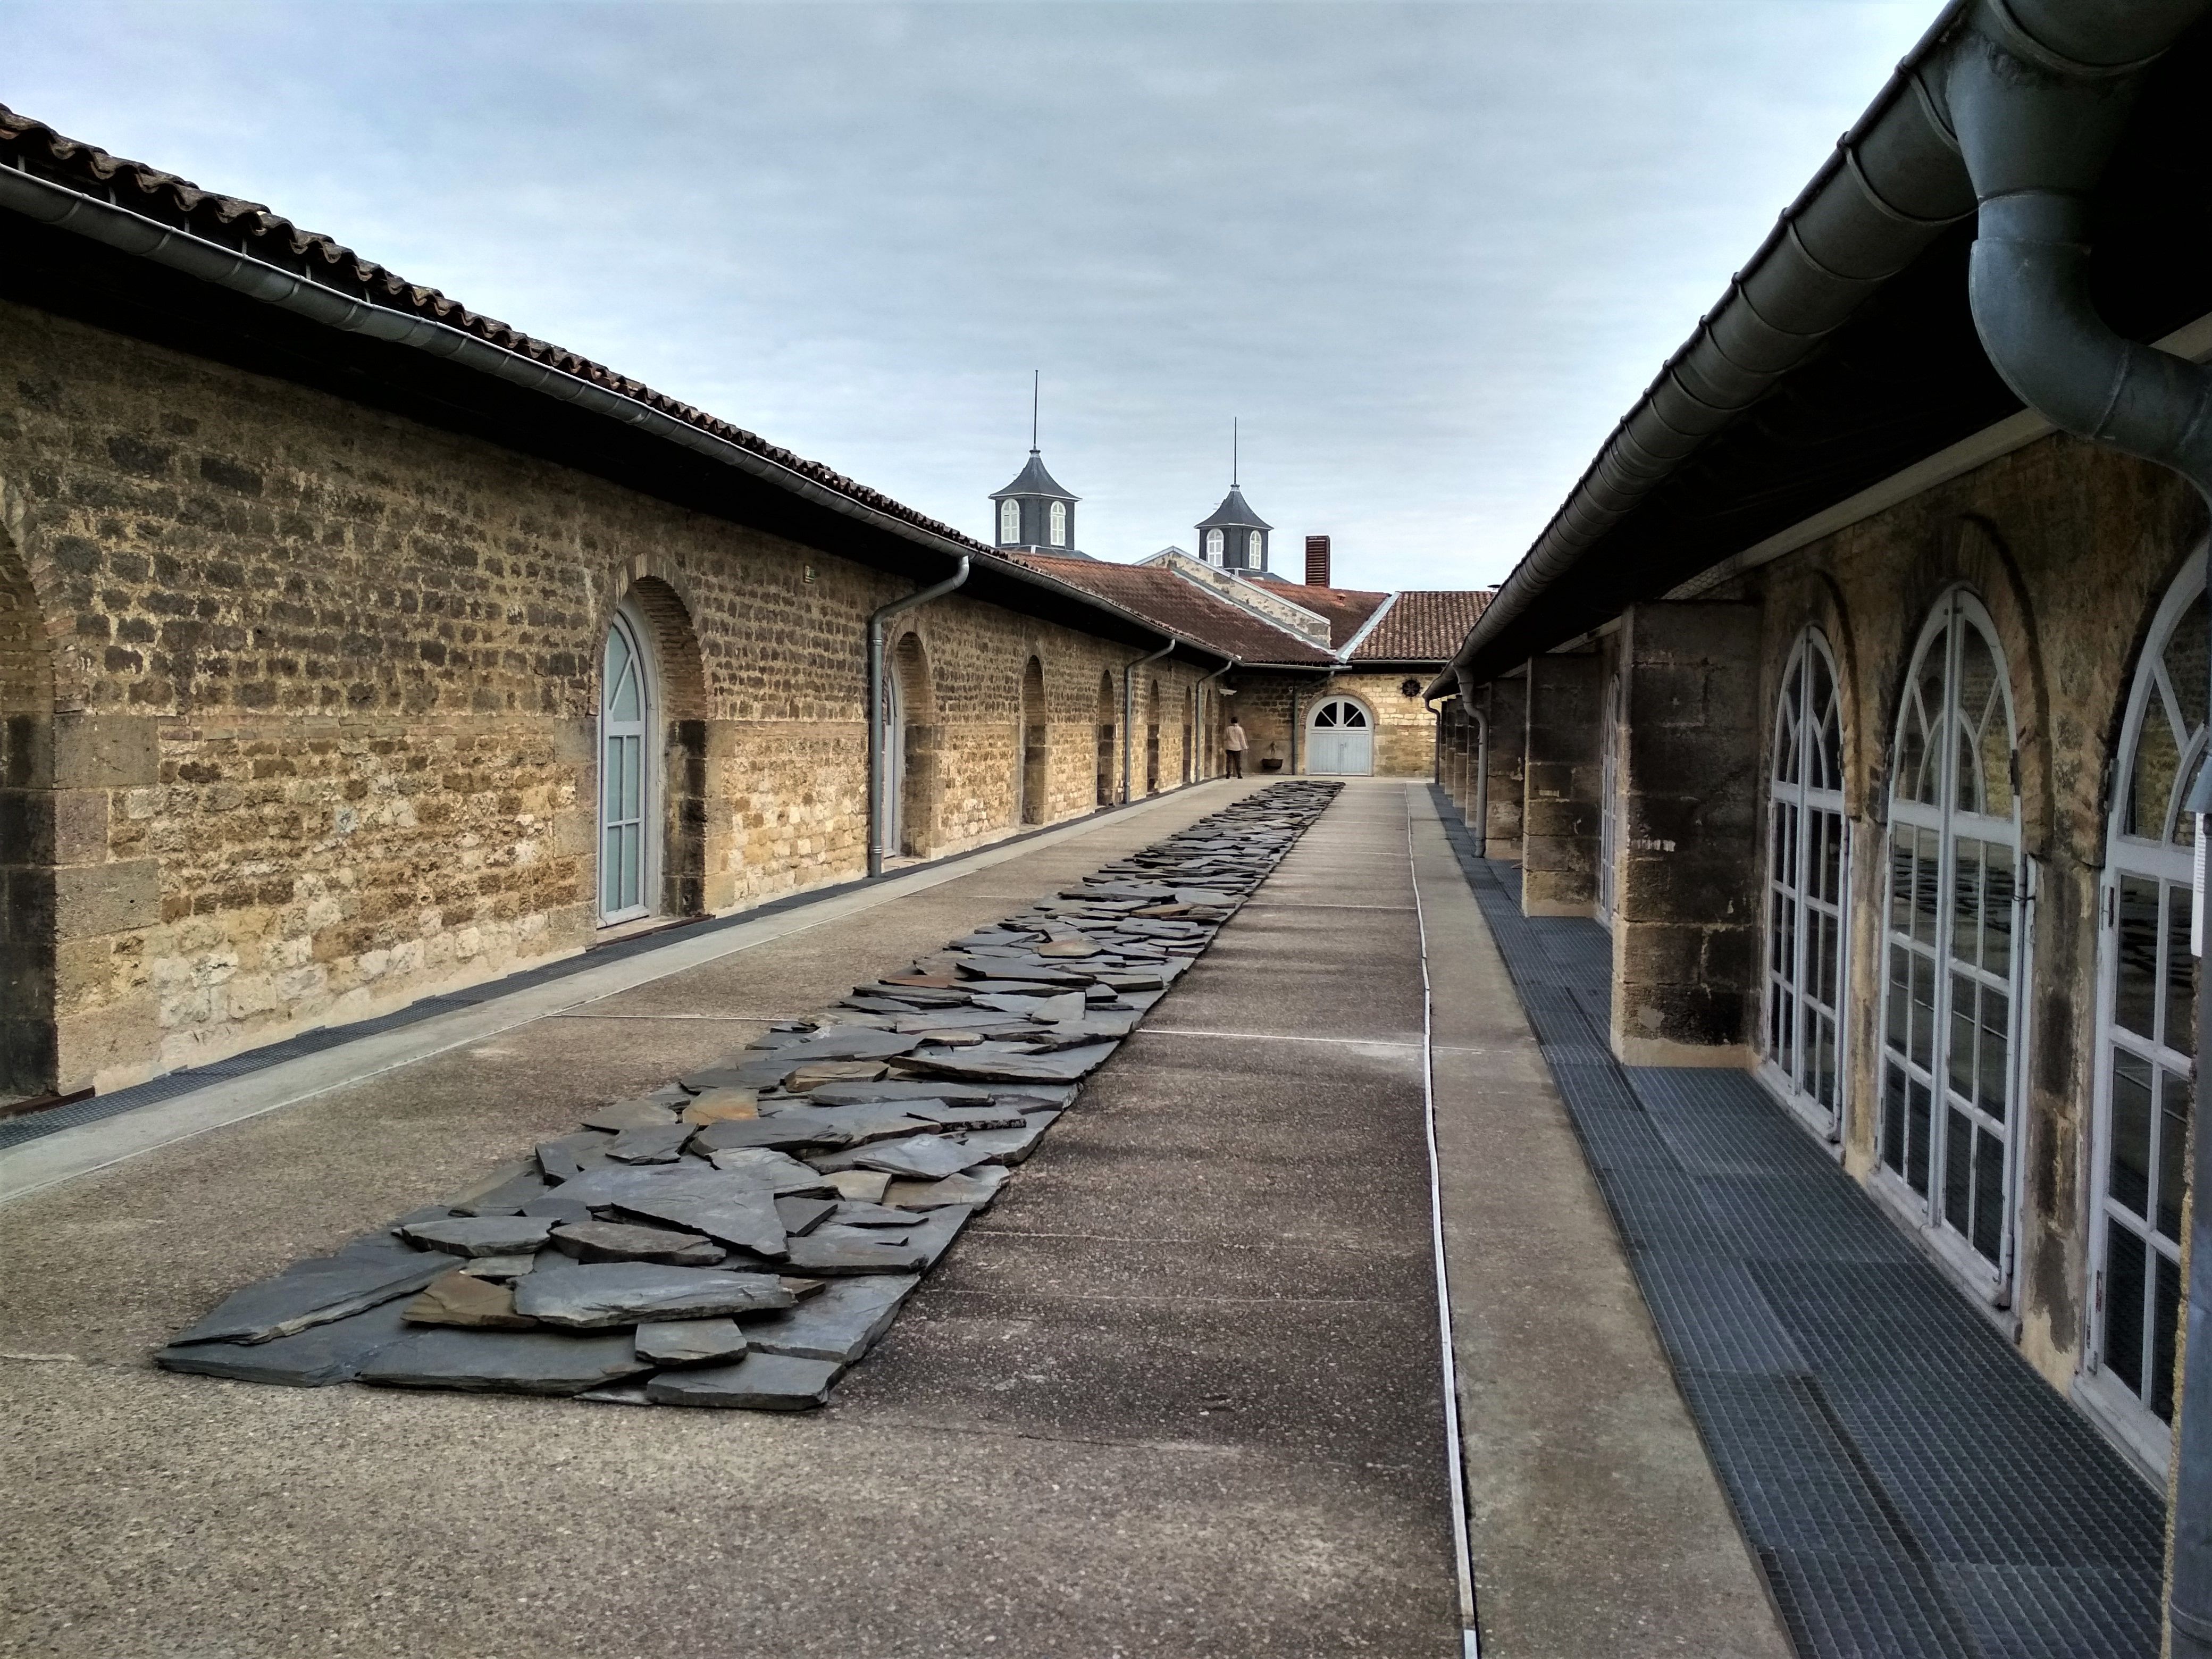 Musée d'art Contemporain (CAPC), Bordeaux: All year